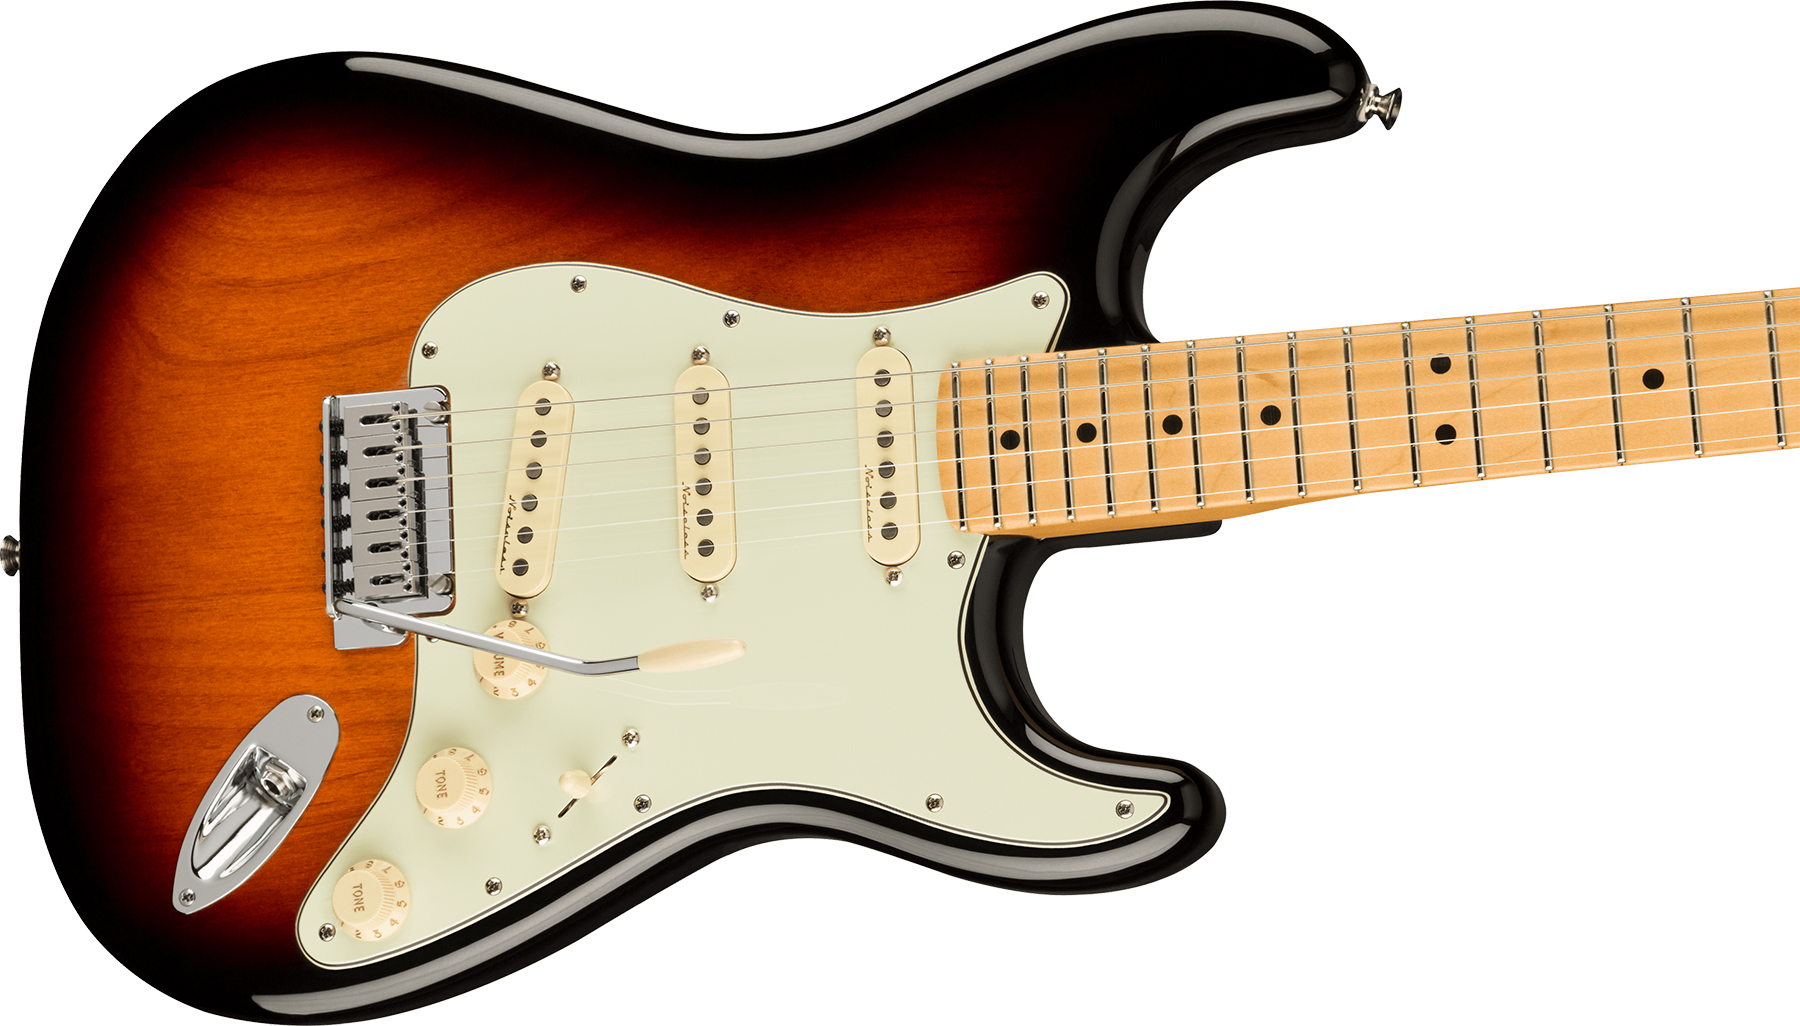 Fender Strat Player Plus Mex 3s Trem Mn - 3-color Sunburst - Str shape electric guitar - Variation 2